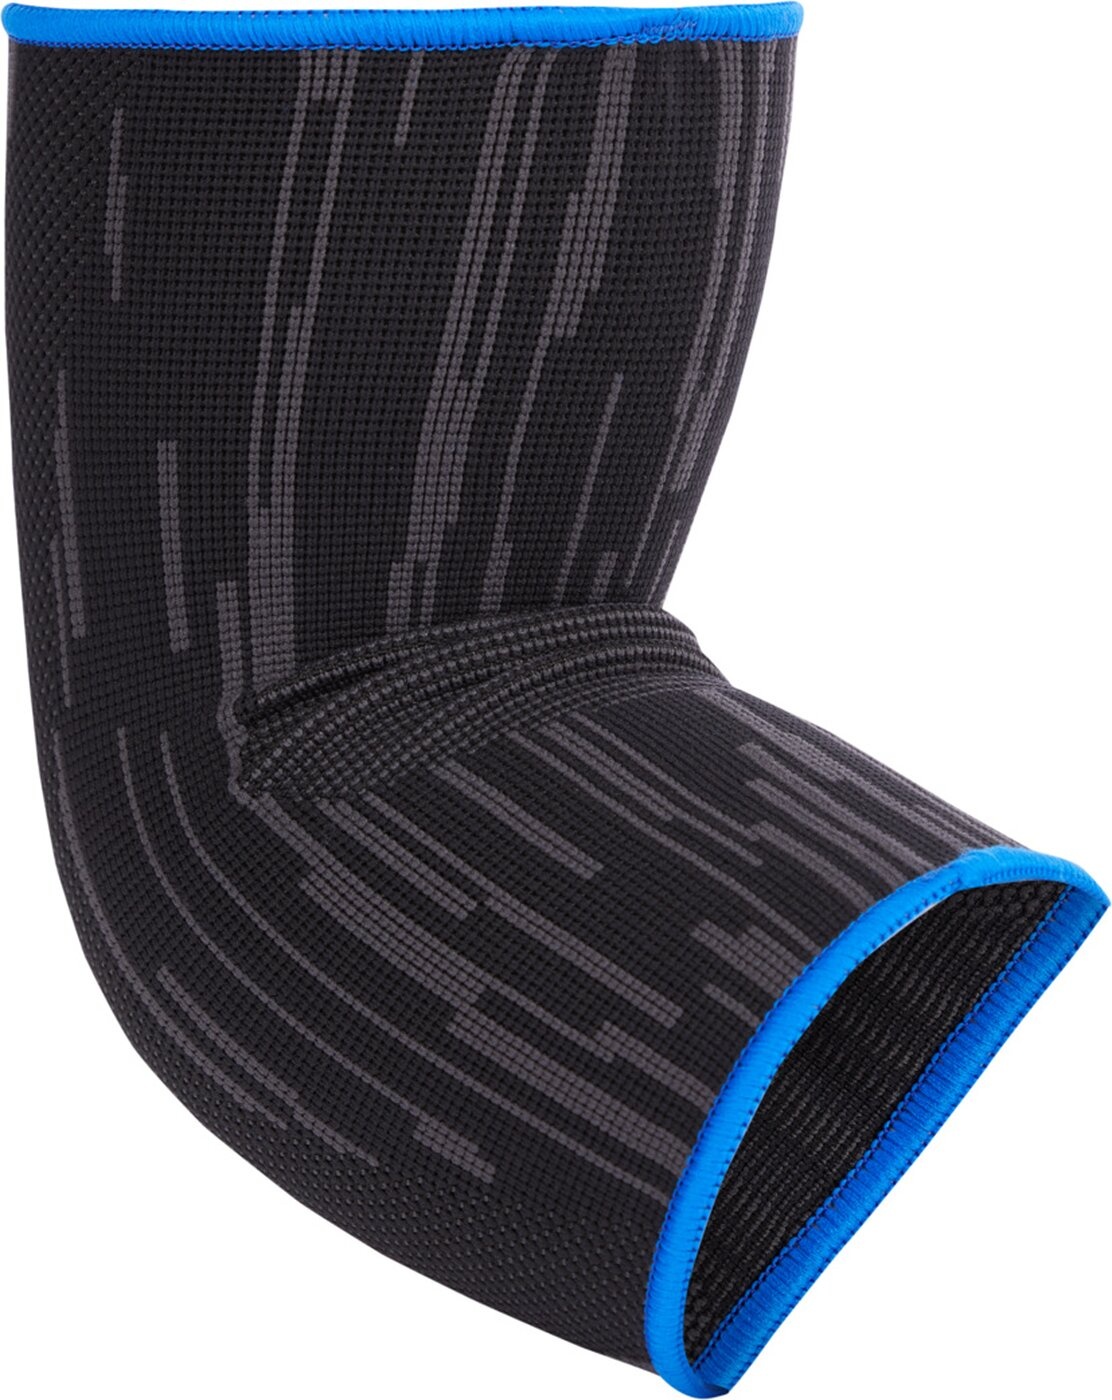 Pro Touch Ellbogen Bandage - Elbow support 300 - schwarz/blau - L